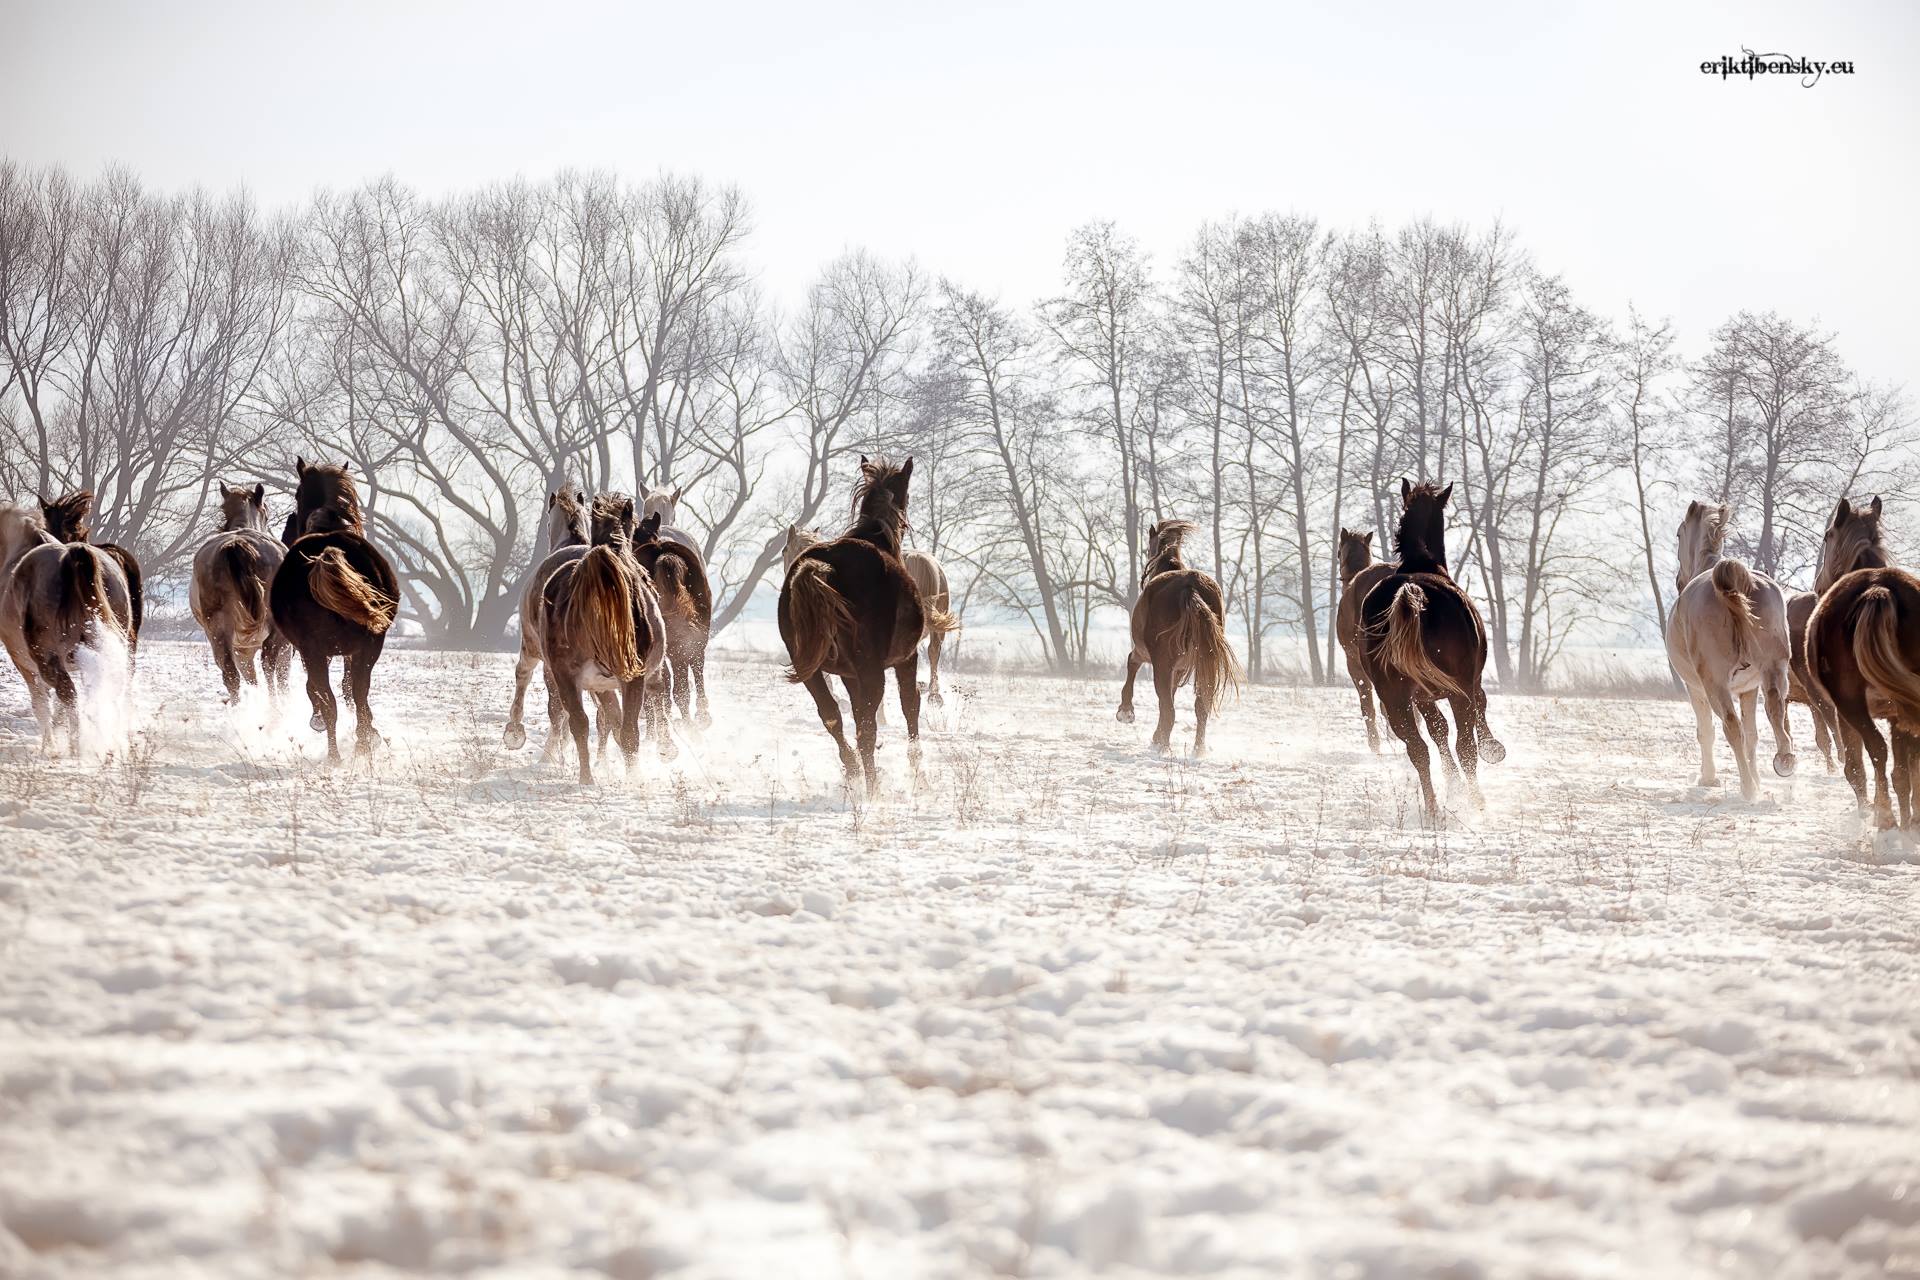 www.eriktibensky.eu-fotograf-kone-wild-horses-photography-1001